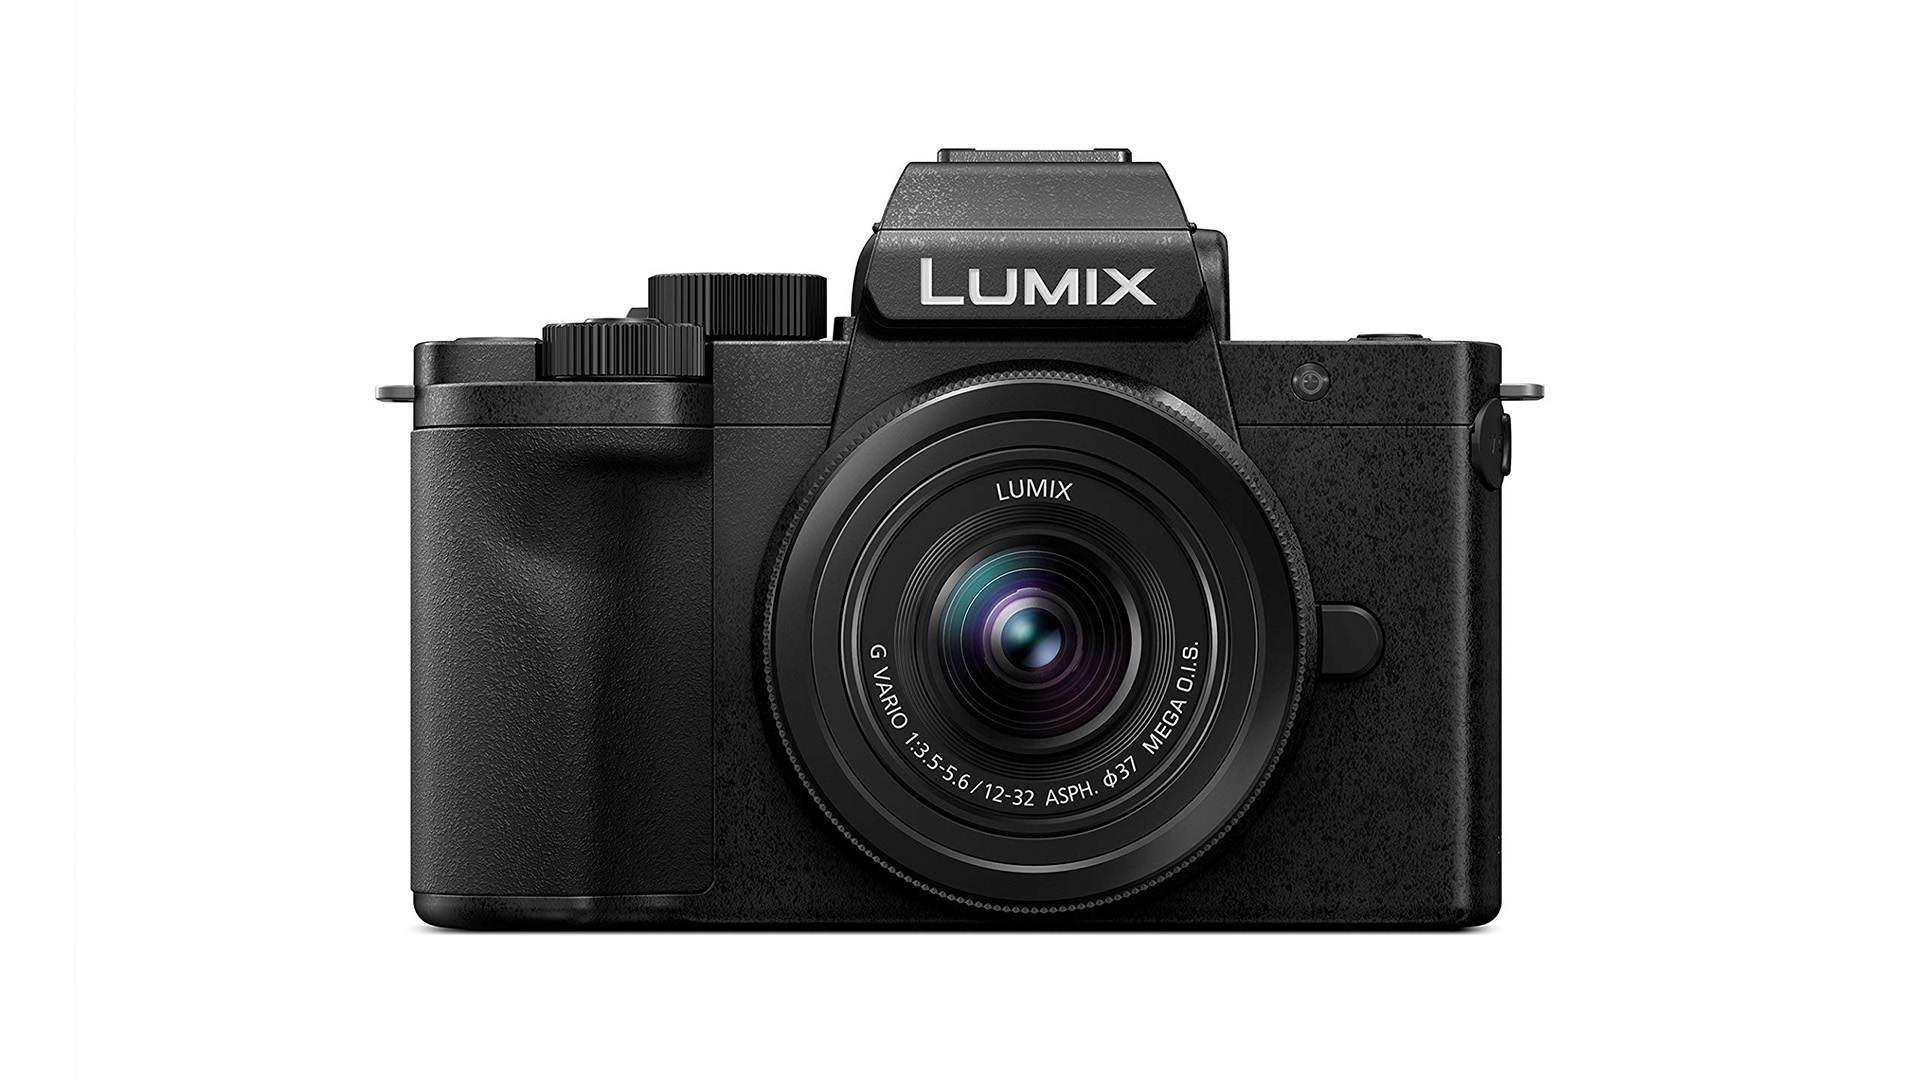 Save over $200 on the Panasonic Lumix G100 mirrorless camera